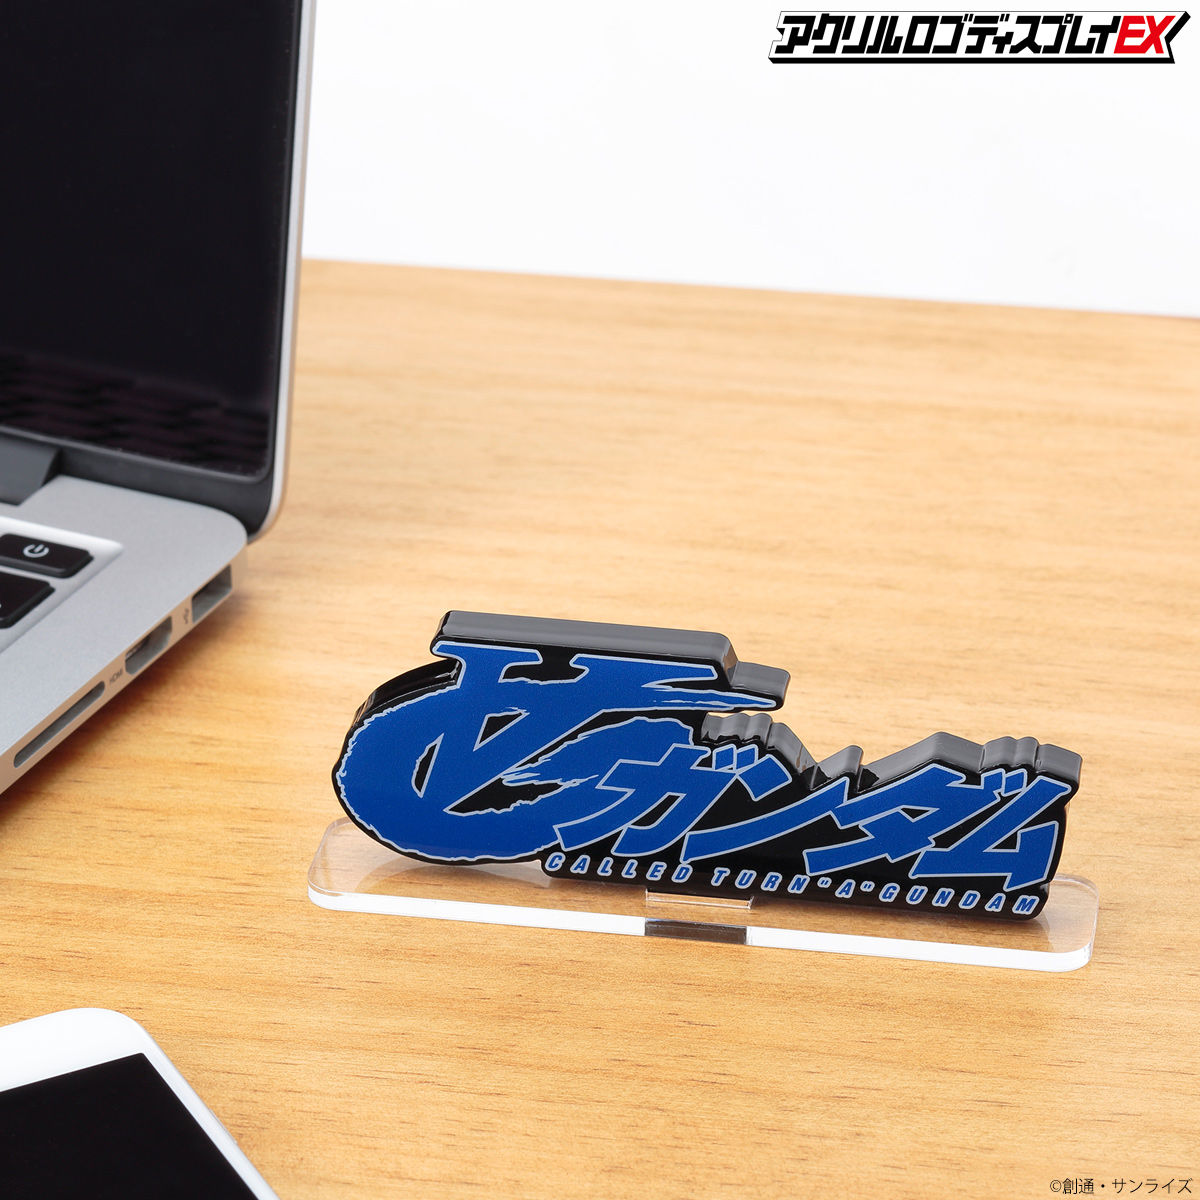 Acrylic Logo Diplay EX-Turn A Gundam